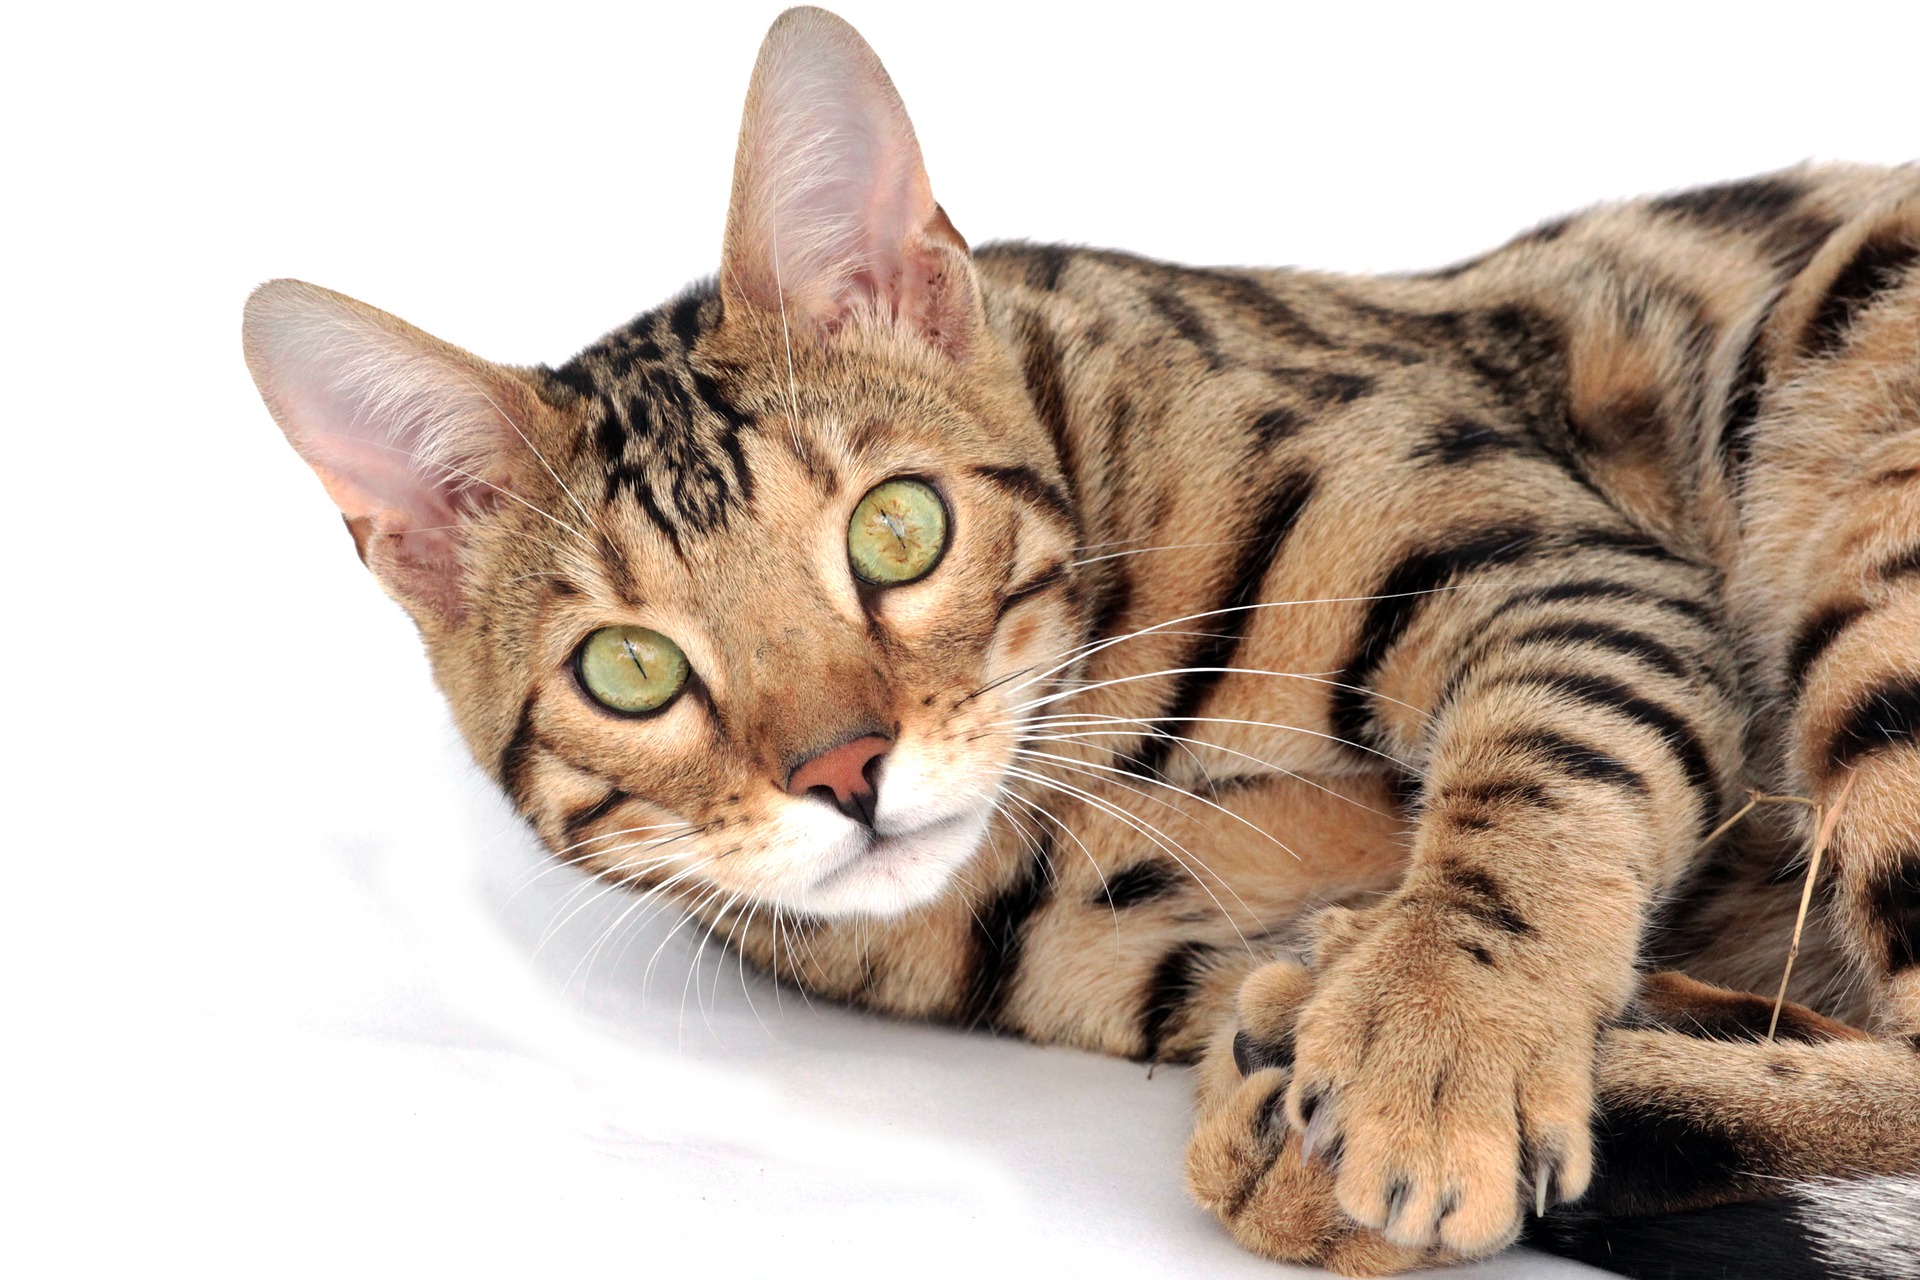 Bengálské kočky zřídka onemocní. Nejčastějšími chorobami jsou nedostatek pyruvátkinázy, hypertrofická kardiomyopatie, progresivní retinální atrofie